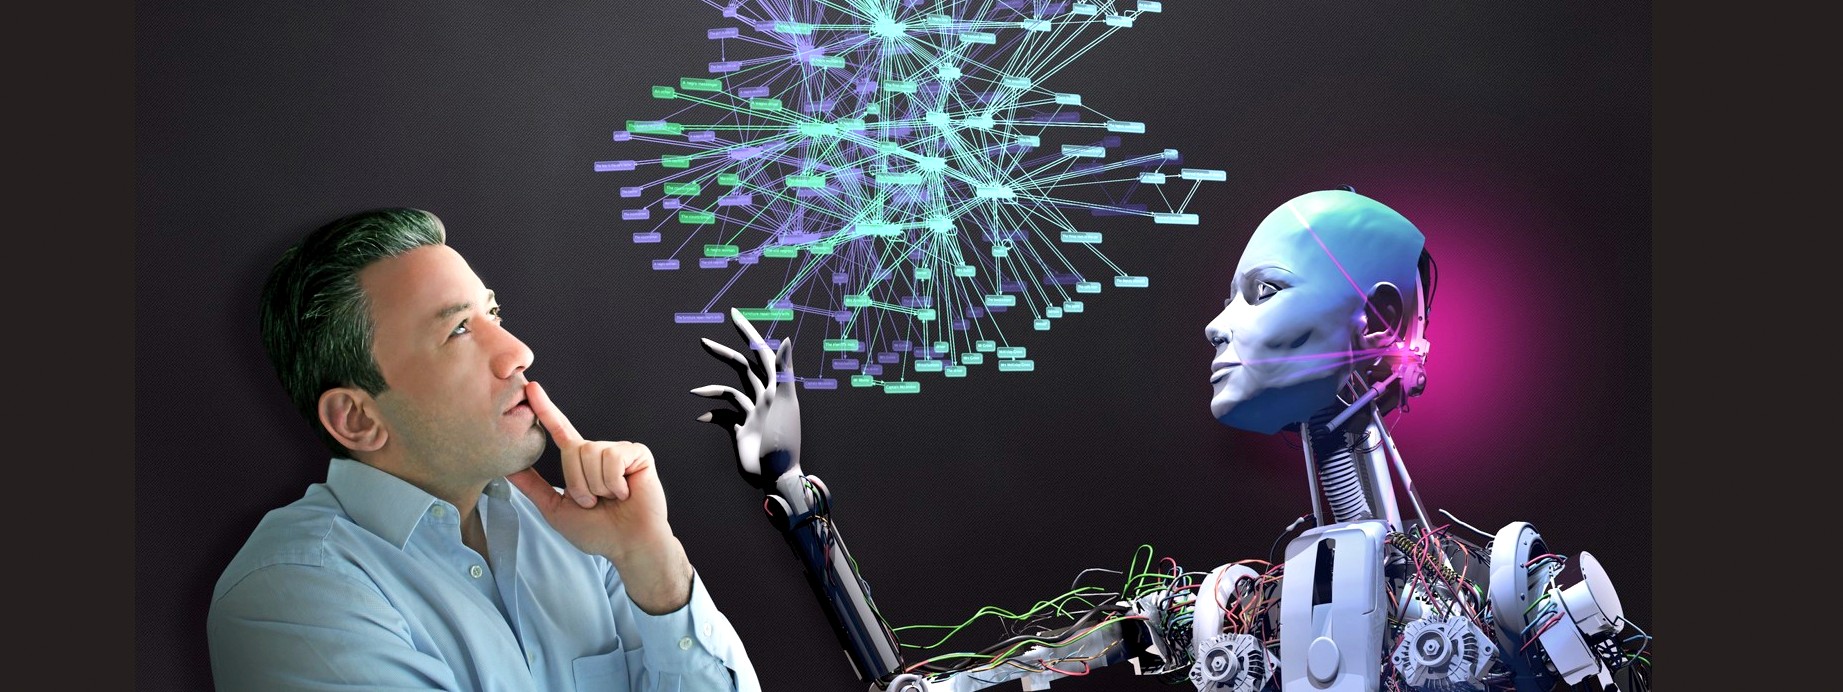 L’Intelligenza artificiale ci sta già trasformando la vita. Cambierà anche la società, il lavoro e i rapporti umani?